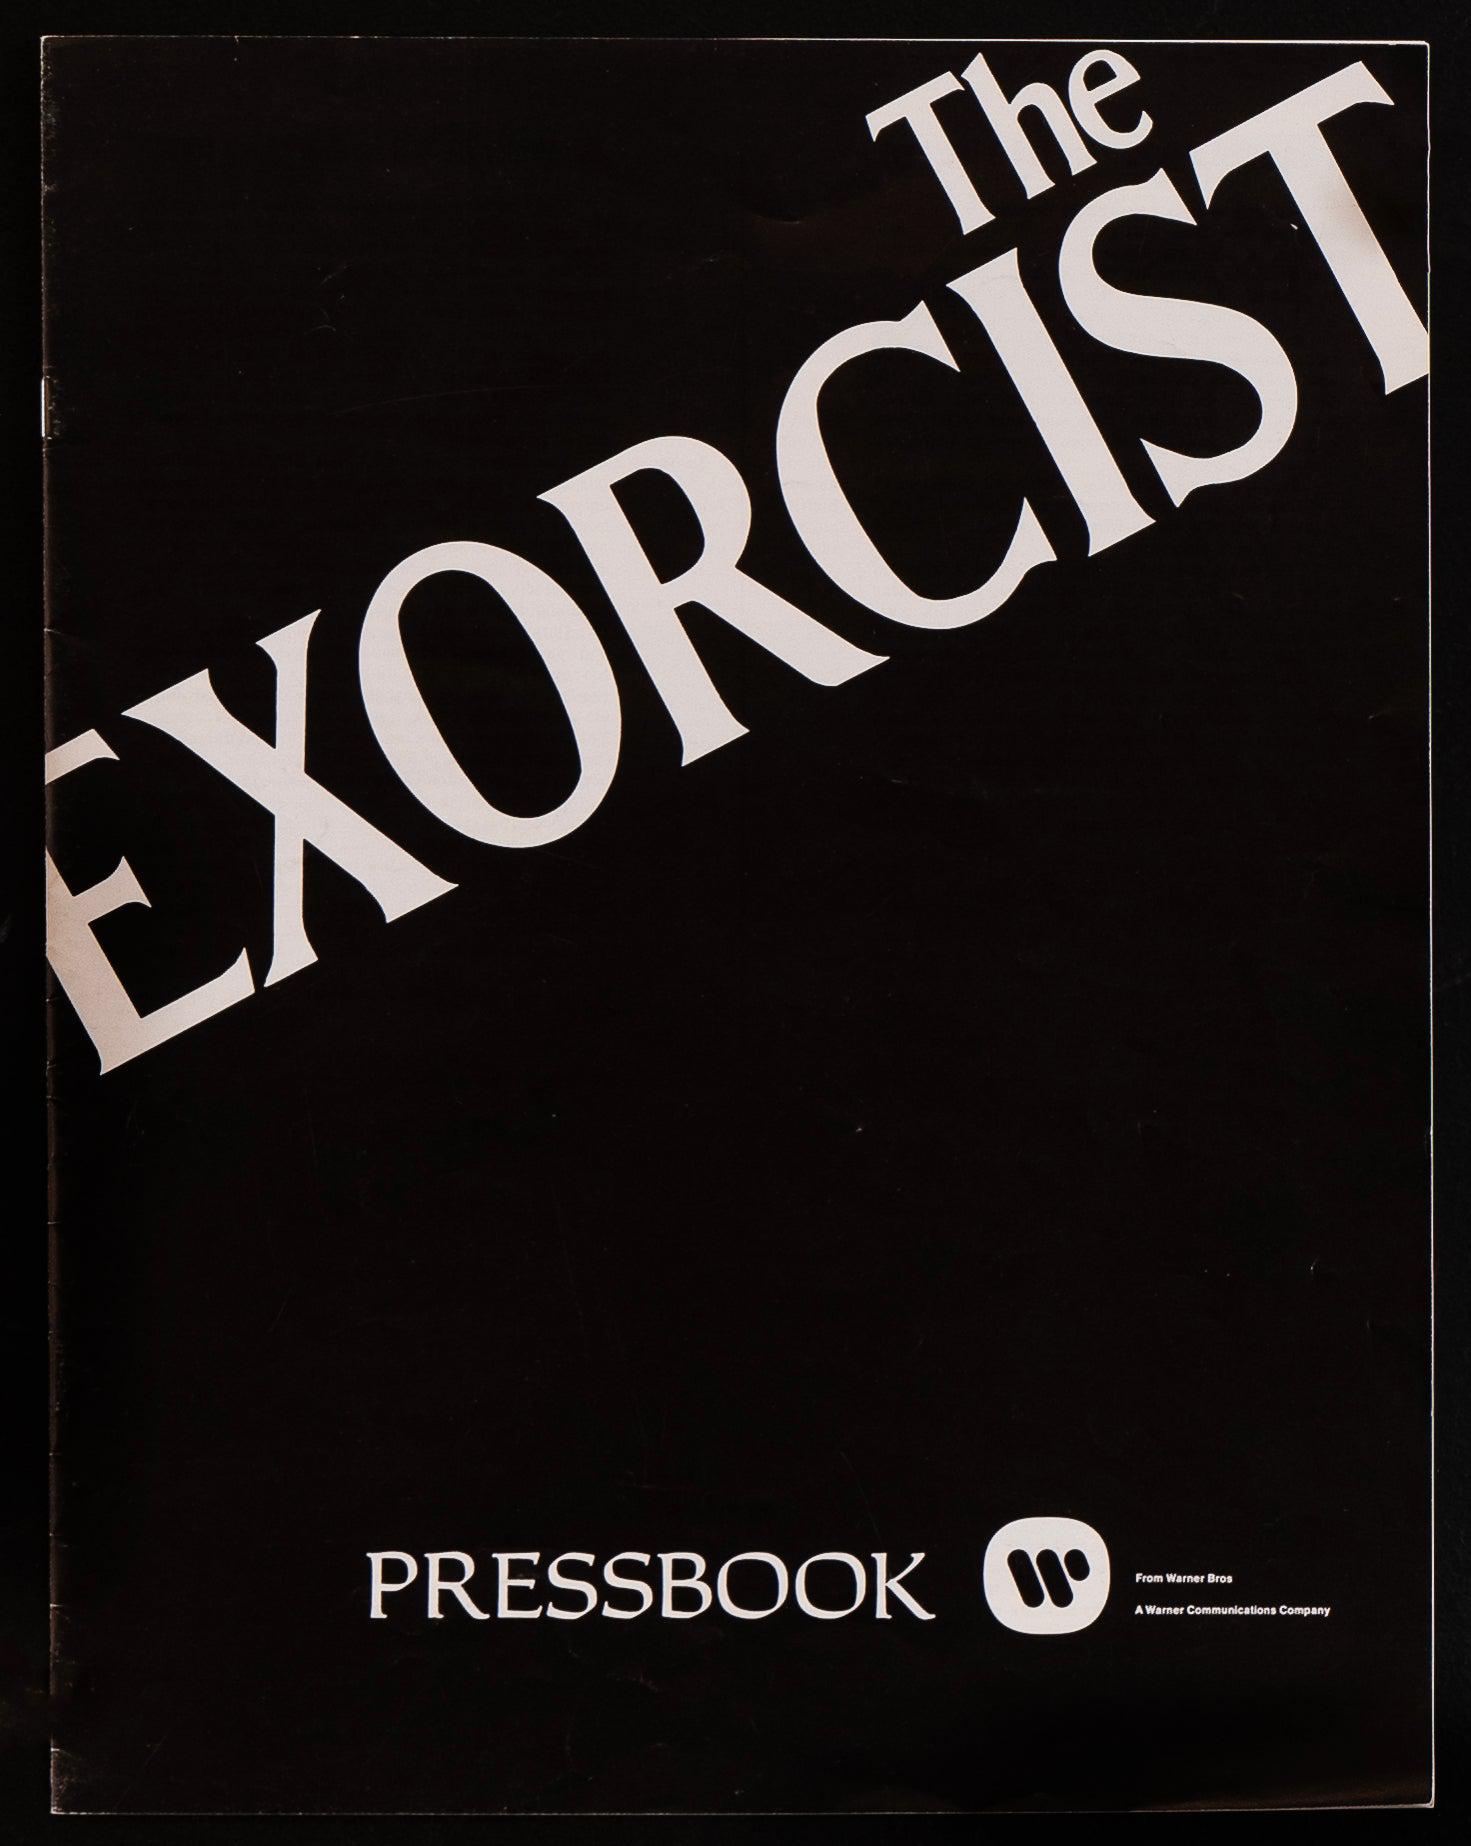 The Exorcist Pressbook Original Vintage Movie Poster